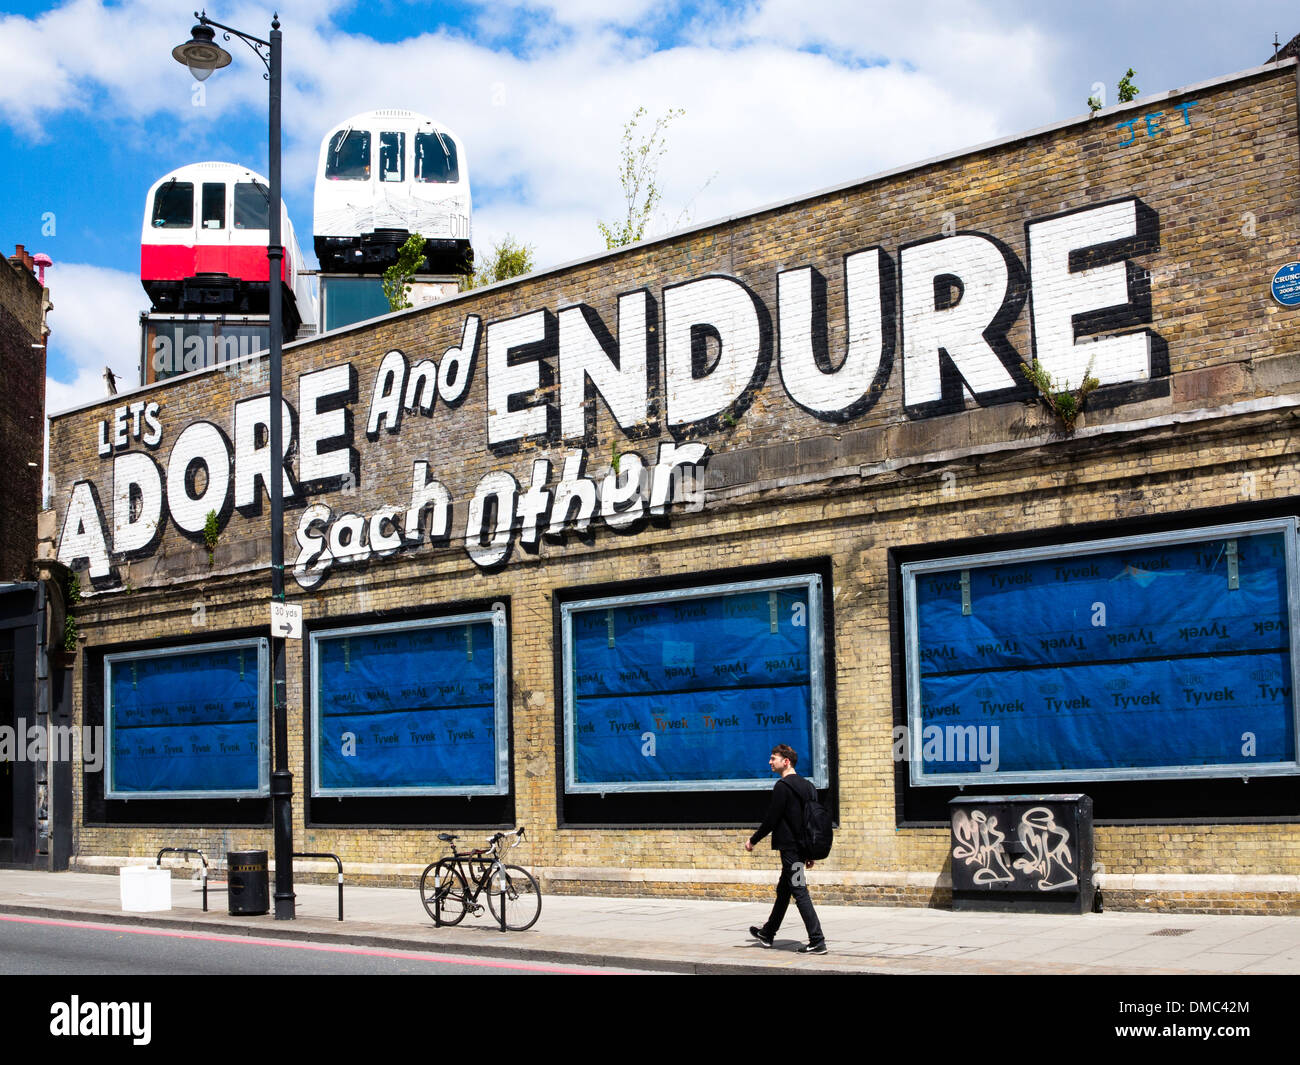 L'adorer et permet de supporter l'autre Graffiti, Shoreditch, East London, UK. Banque D'Images